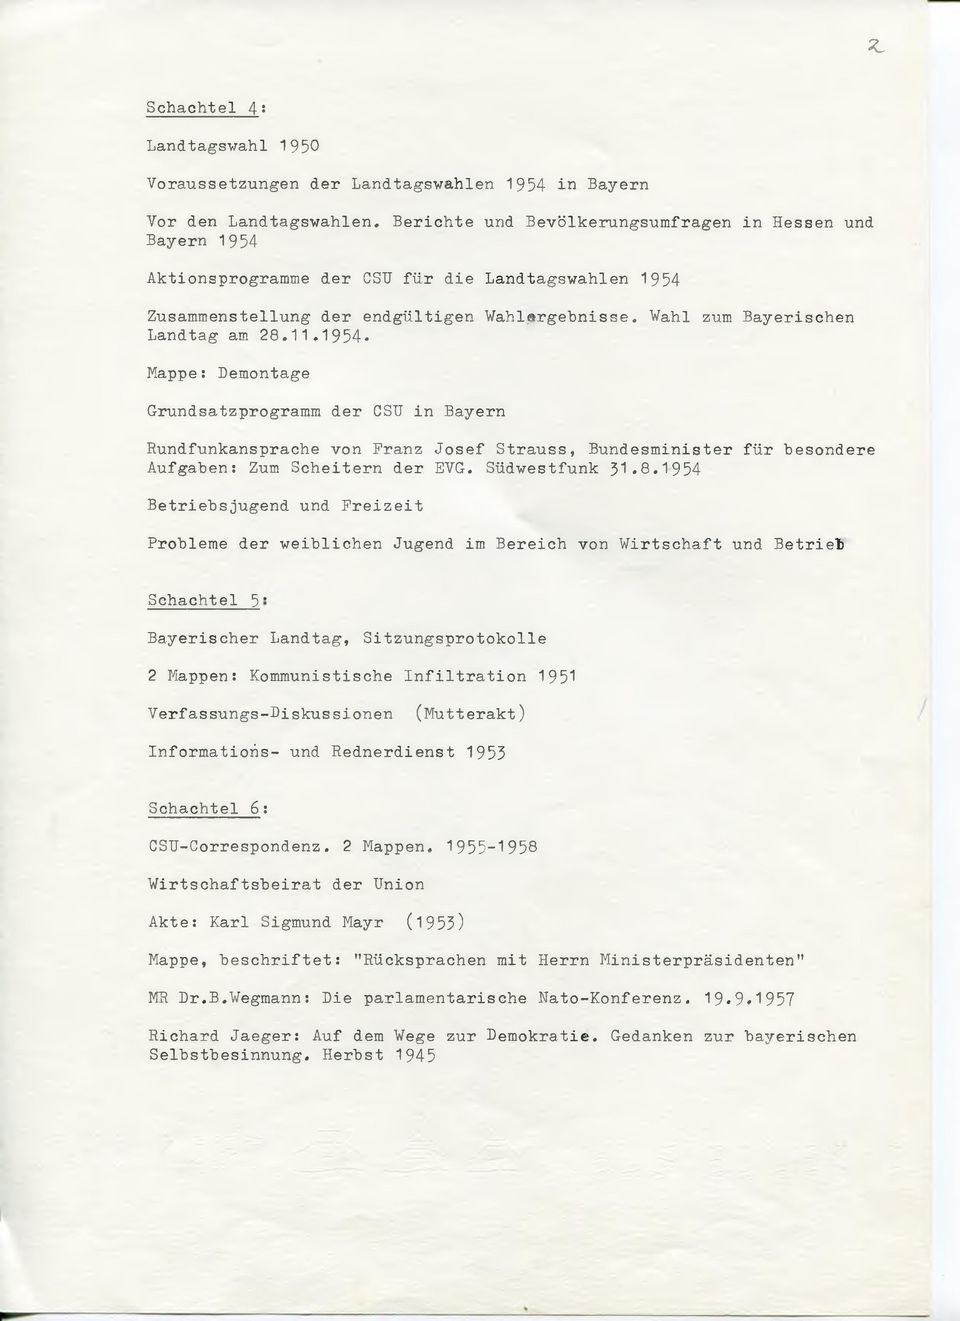 1954 Zusammenstellung der endgültigen Wahlergebnisse. Wahl zum Bayerischen Landtag am 28.